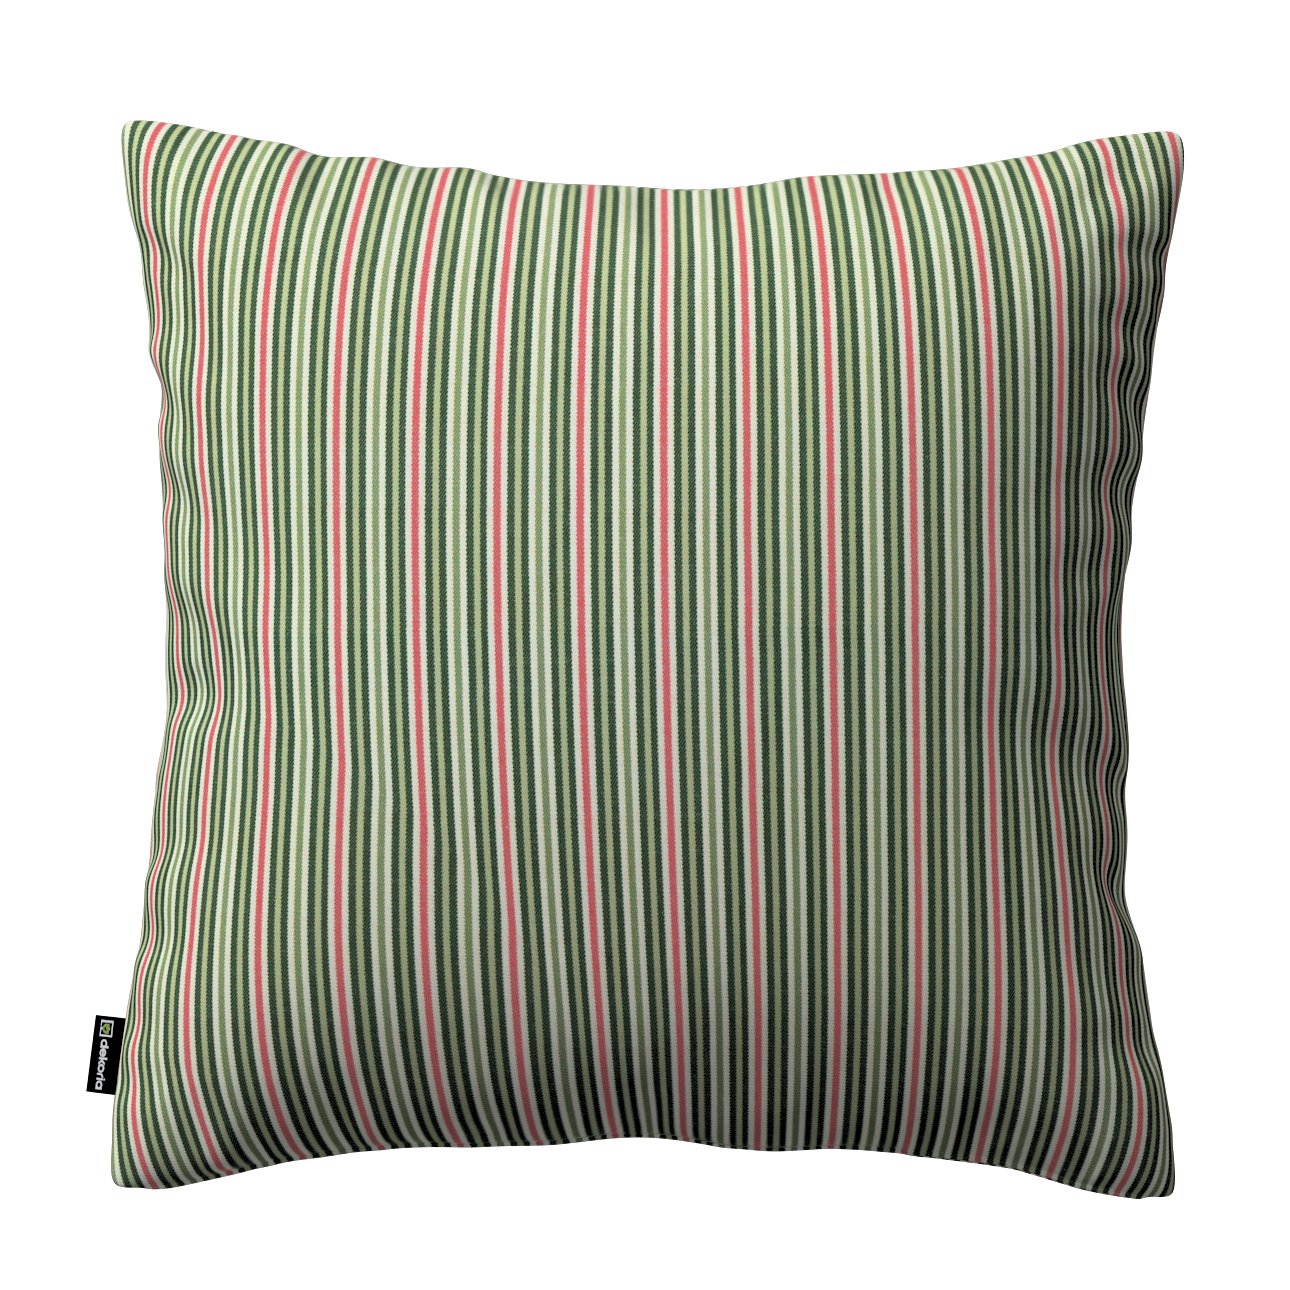 Dekoria Karin - jednoduchá obliečka, pásy v zelených a červených odtieňoch, 50 x 50 cm, Londres, 143-42